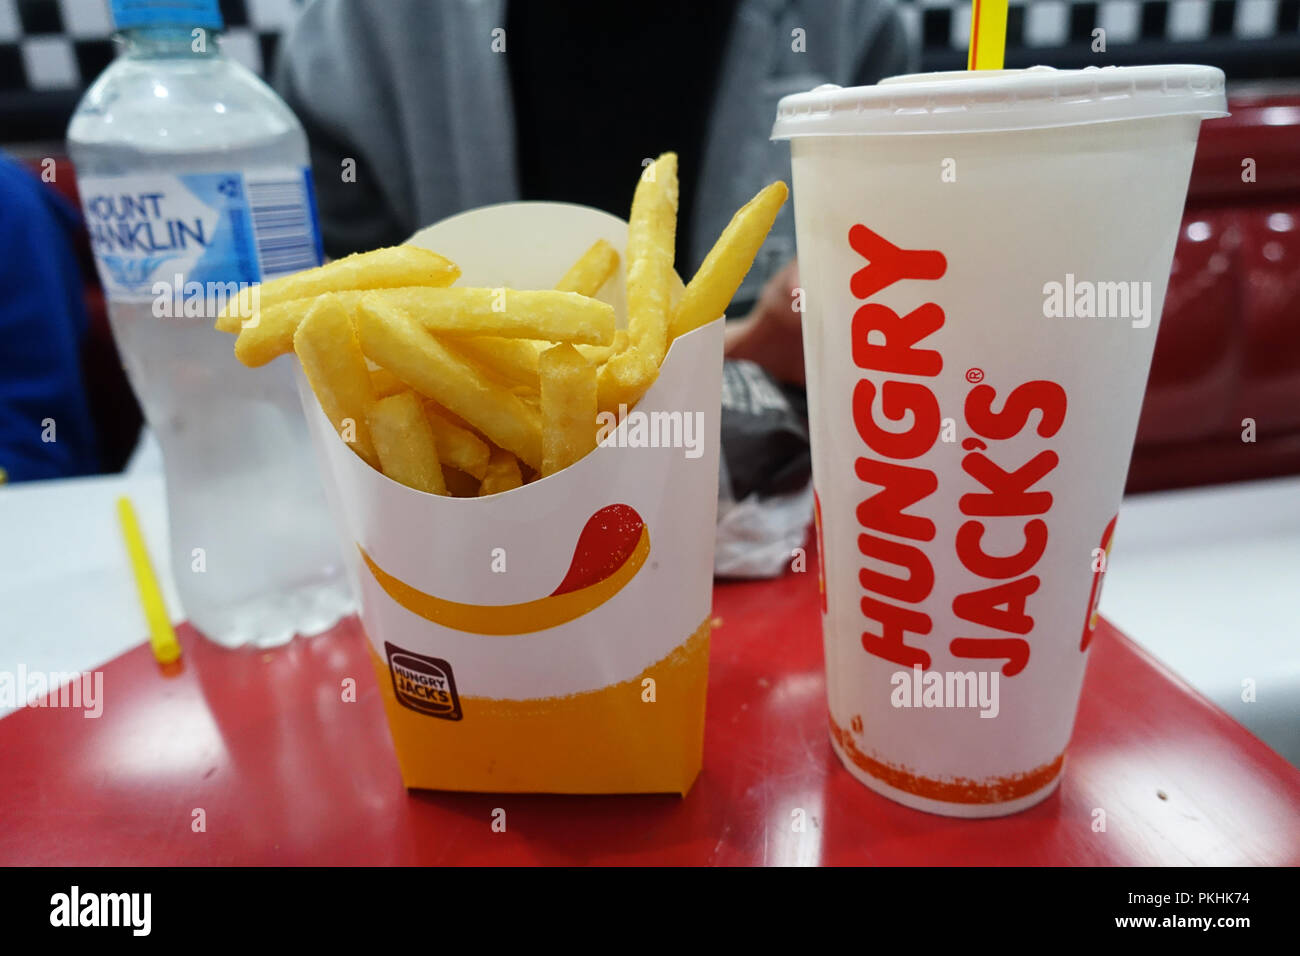 Chaîne de restauration rapide australienne Hungry Jack's repas (Burger King) et un verre Banque D'Images